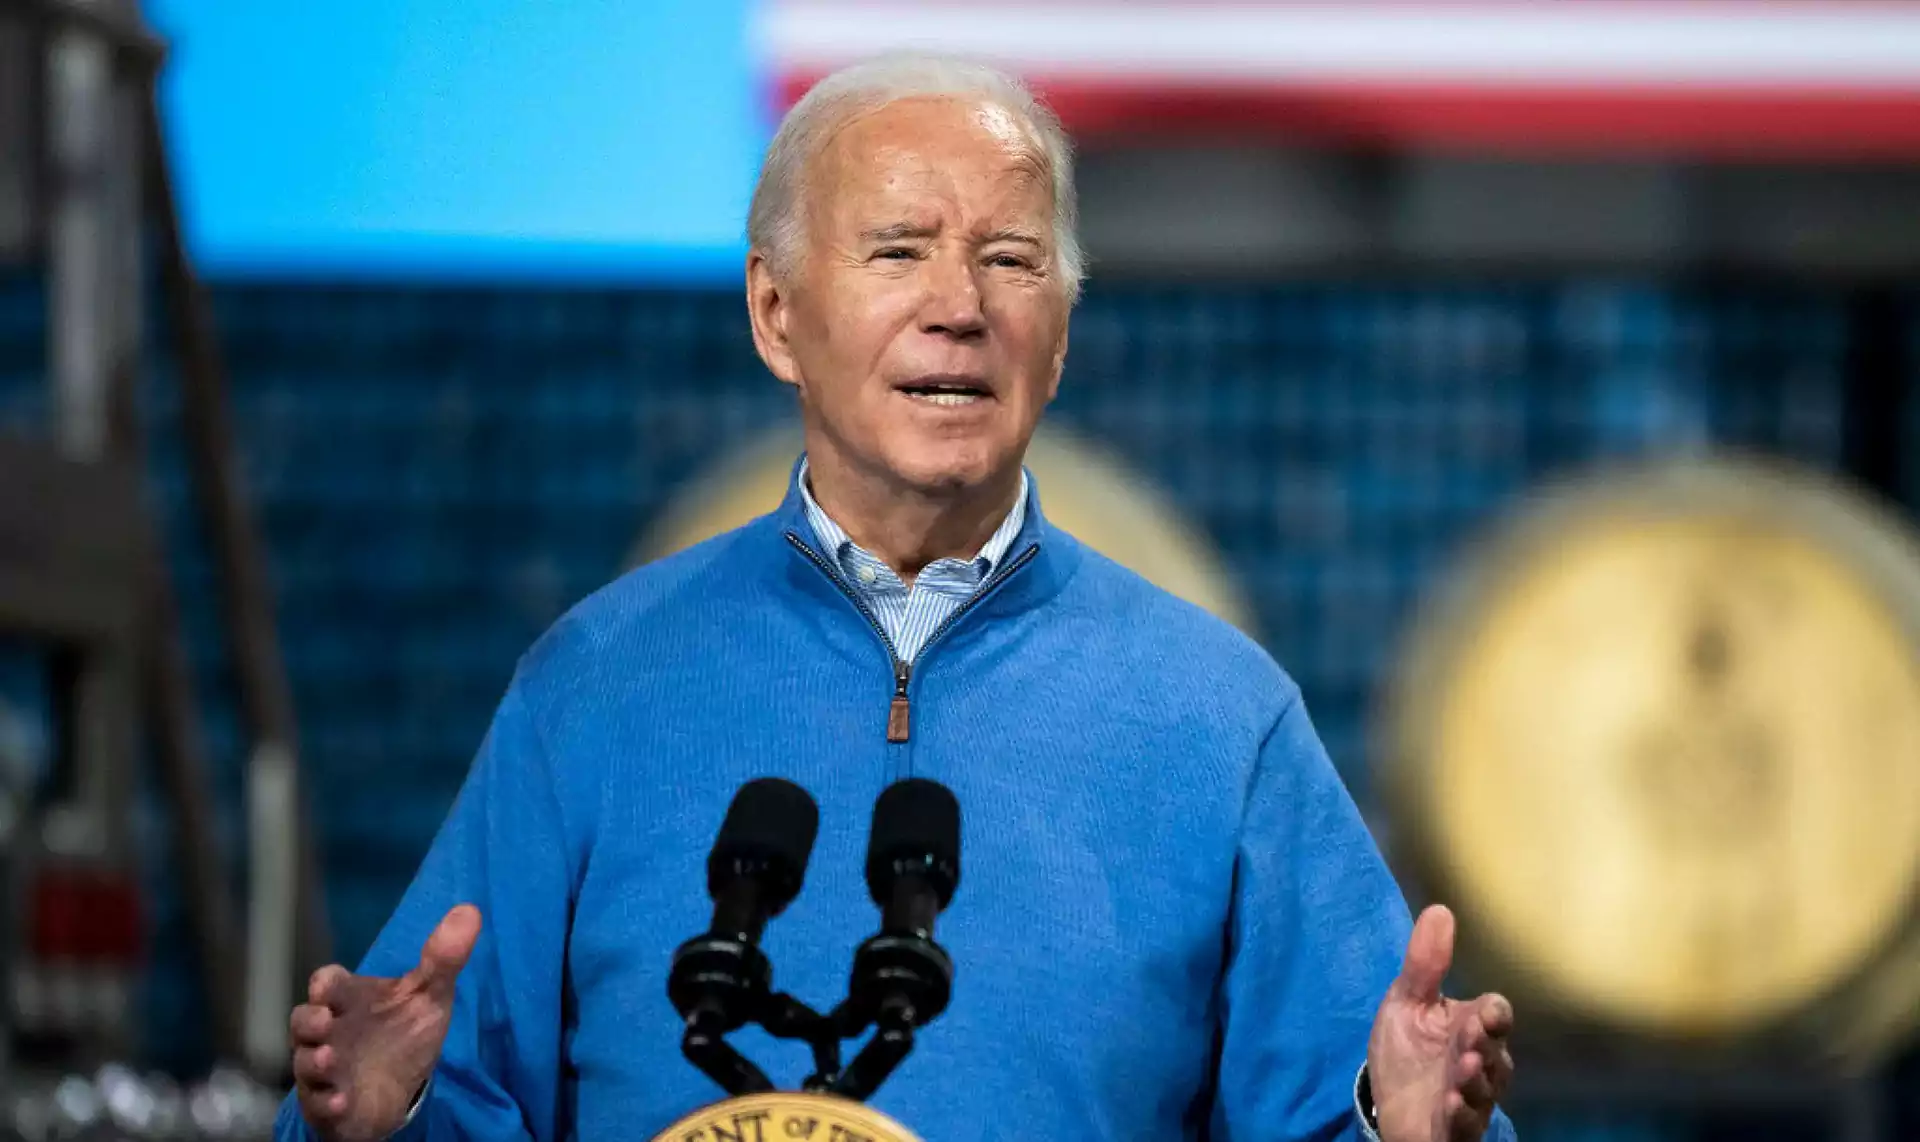 Gibberish Galore: Viral Video Shows Joe Biden's Slurry Speech Sparking ...